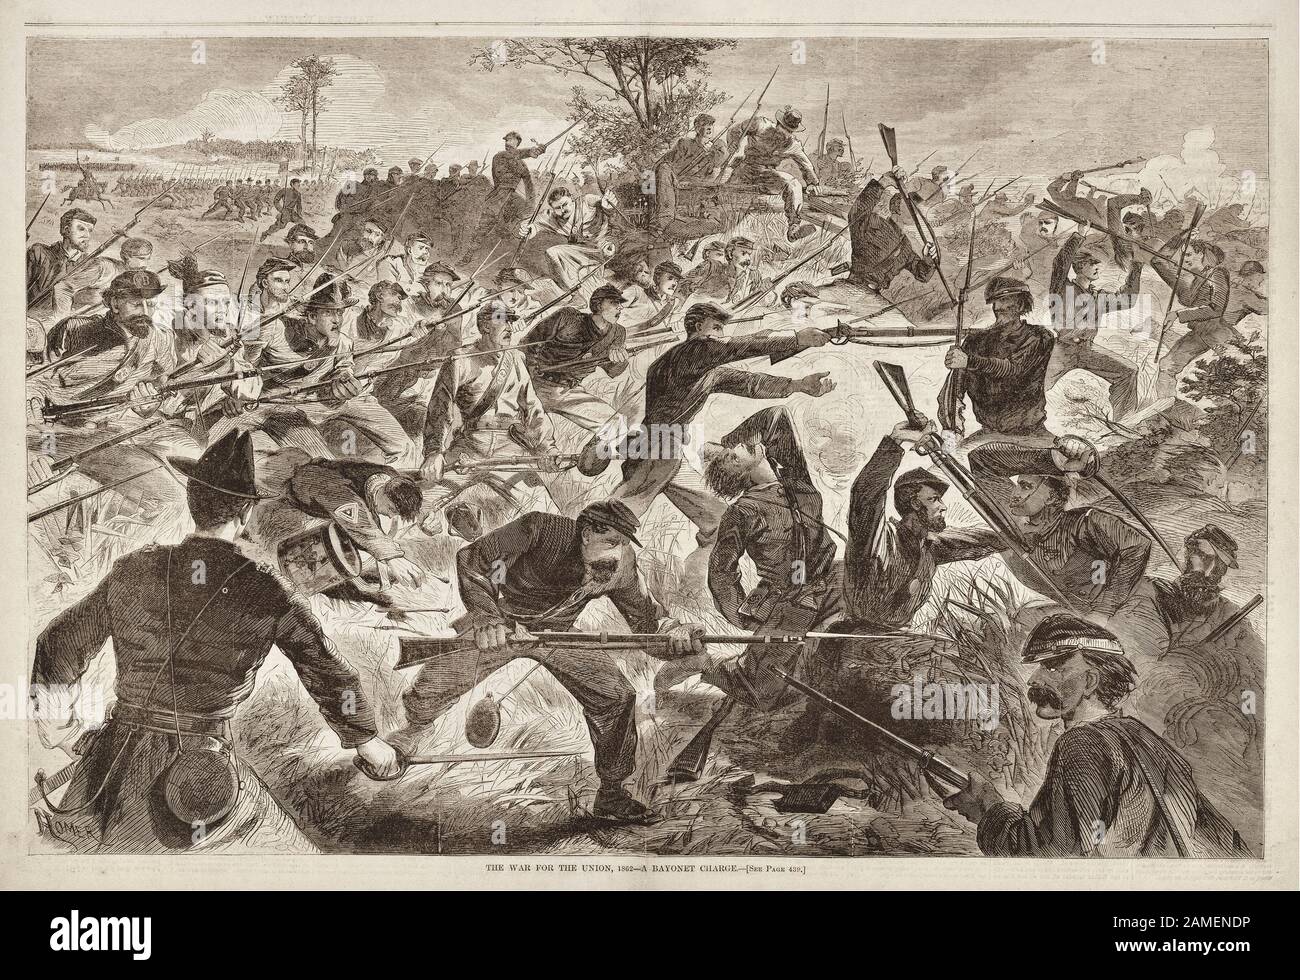 La guerra por la Unión, 1862 – Una Carga de bayoneta. Julio 1862 En el verano de 1862 el Ejército del Potomac montó un asalto a Richmond, Virginia, pero Foto de stock